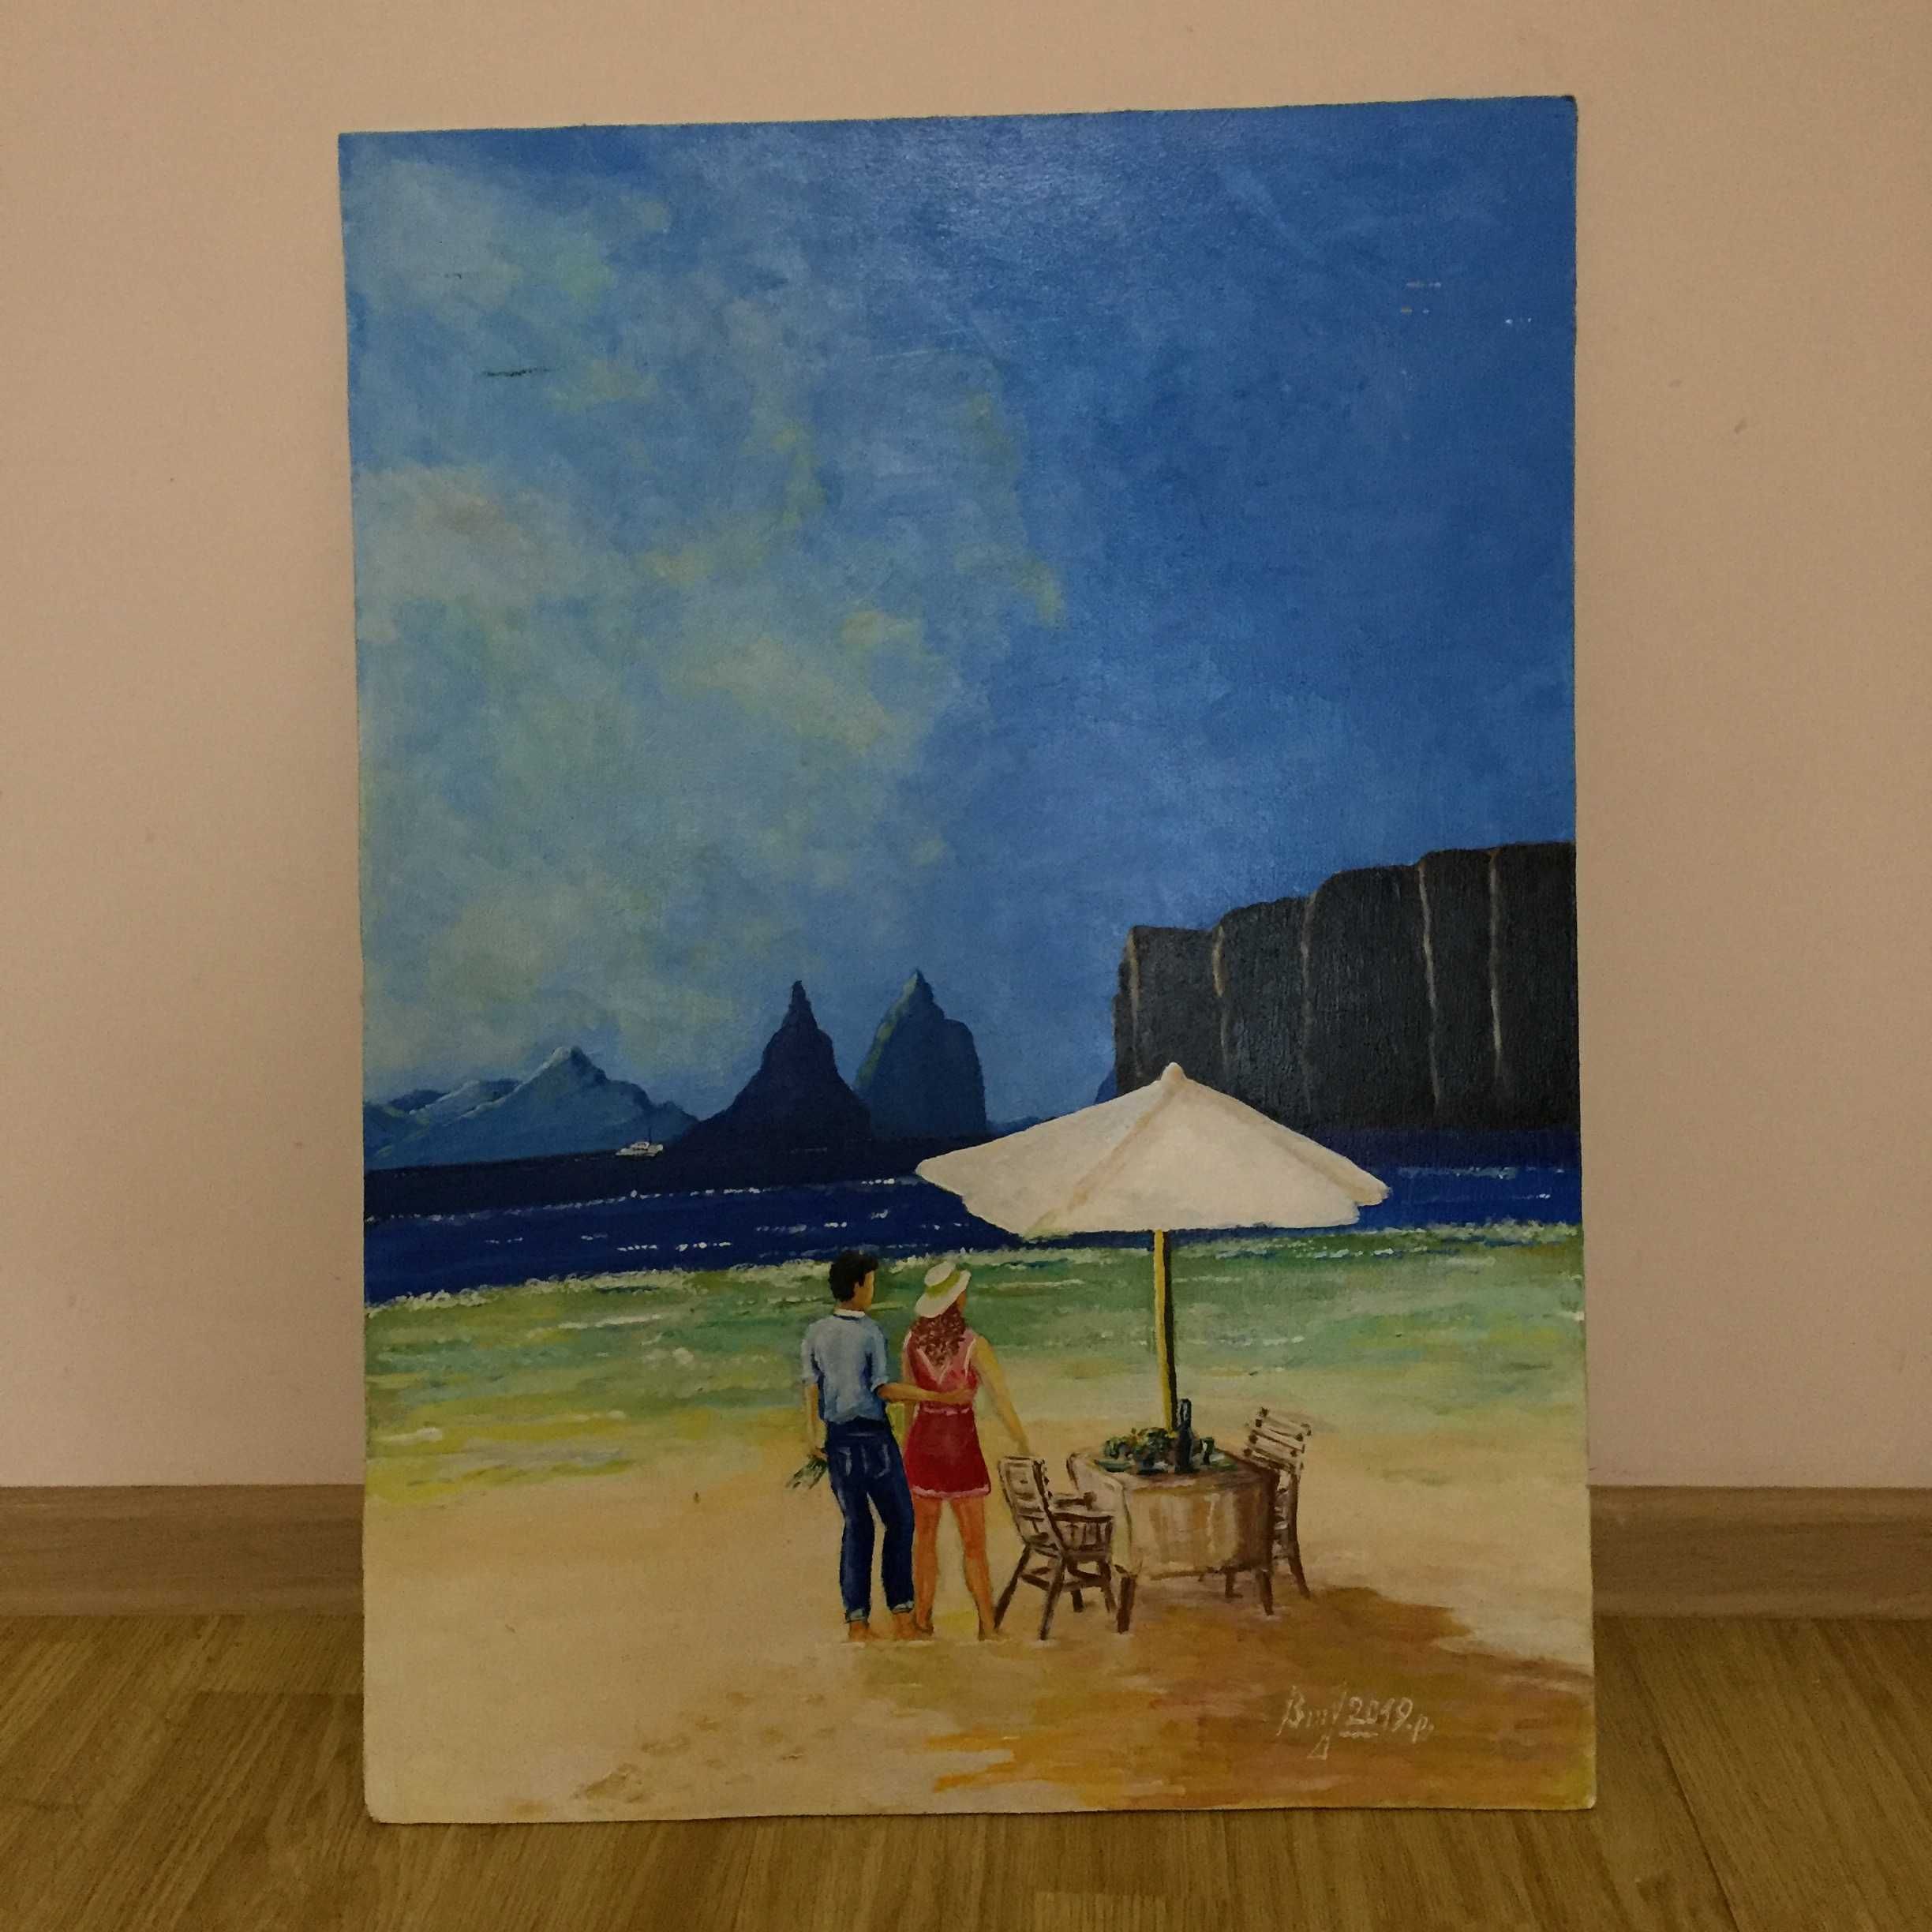 Романтичний вечір на пляжі, картина акрилом, ручна робота, 52,5x73